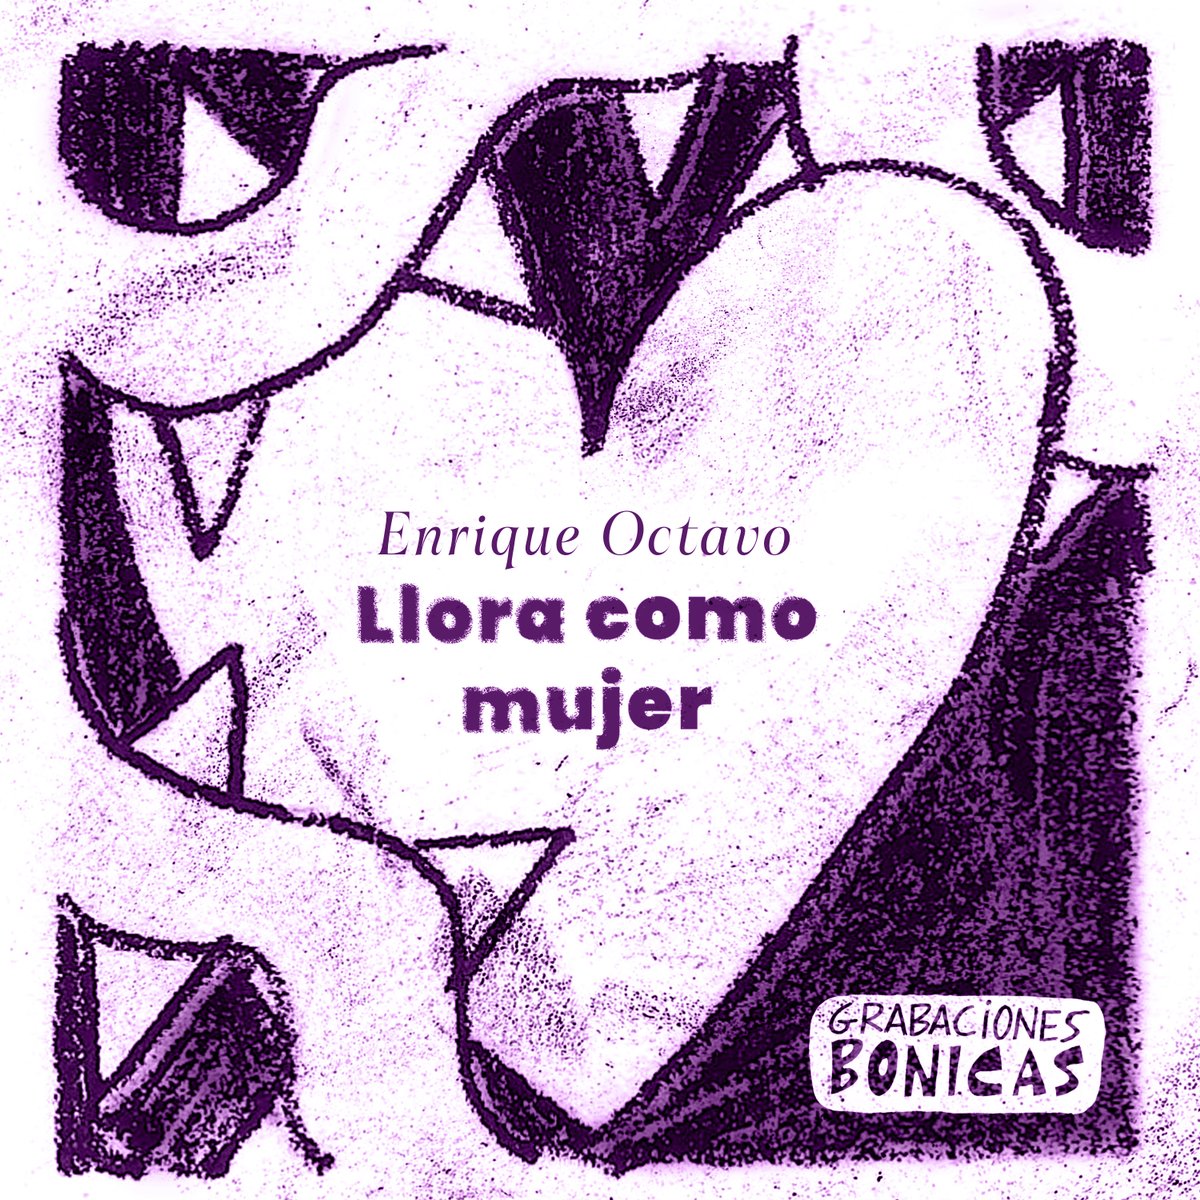 Nuestra canción del mismo recopilatorio sale a fin de mes #Granaenterra #recopilatorio #grabacionesbonicas